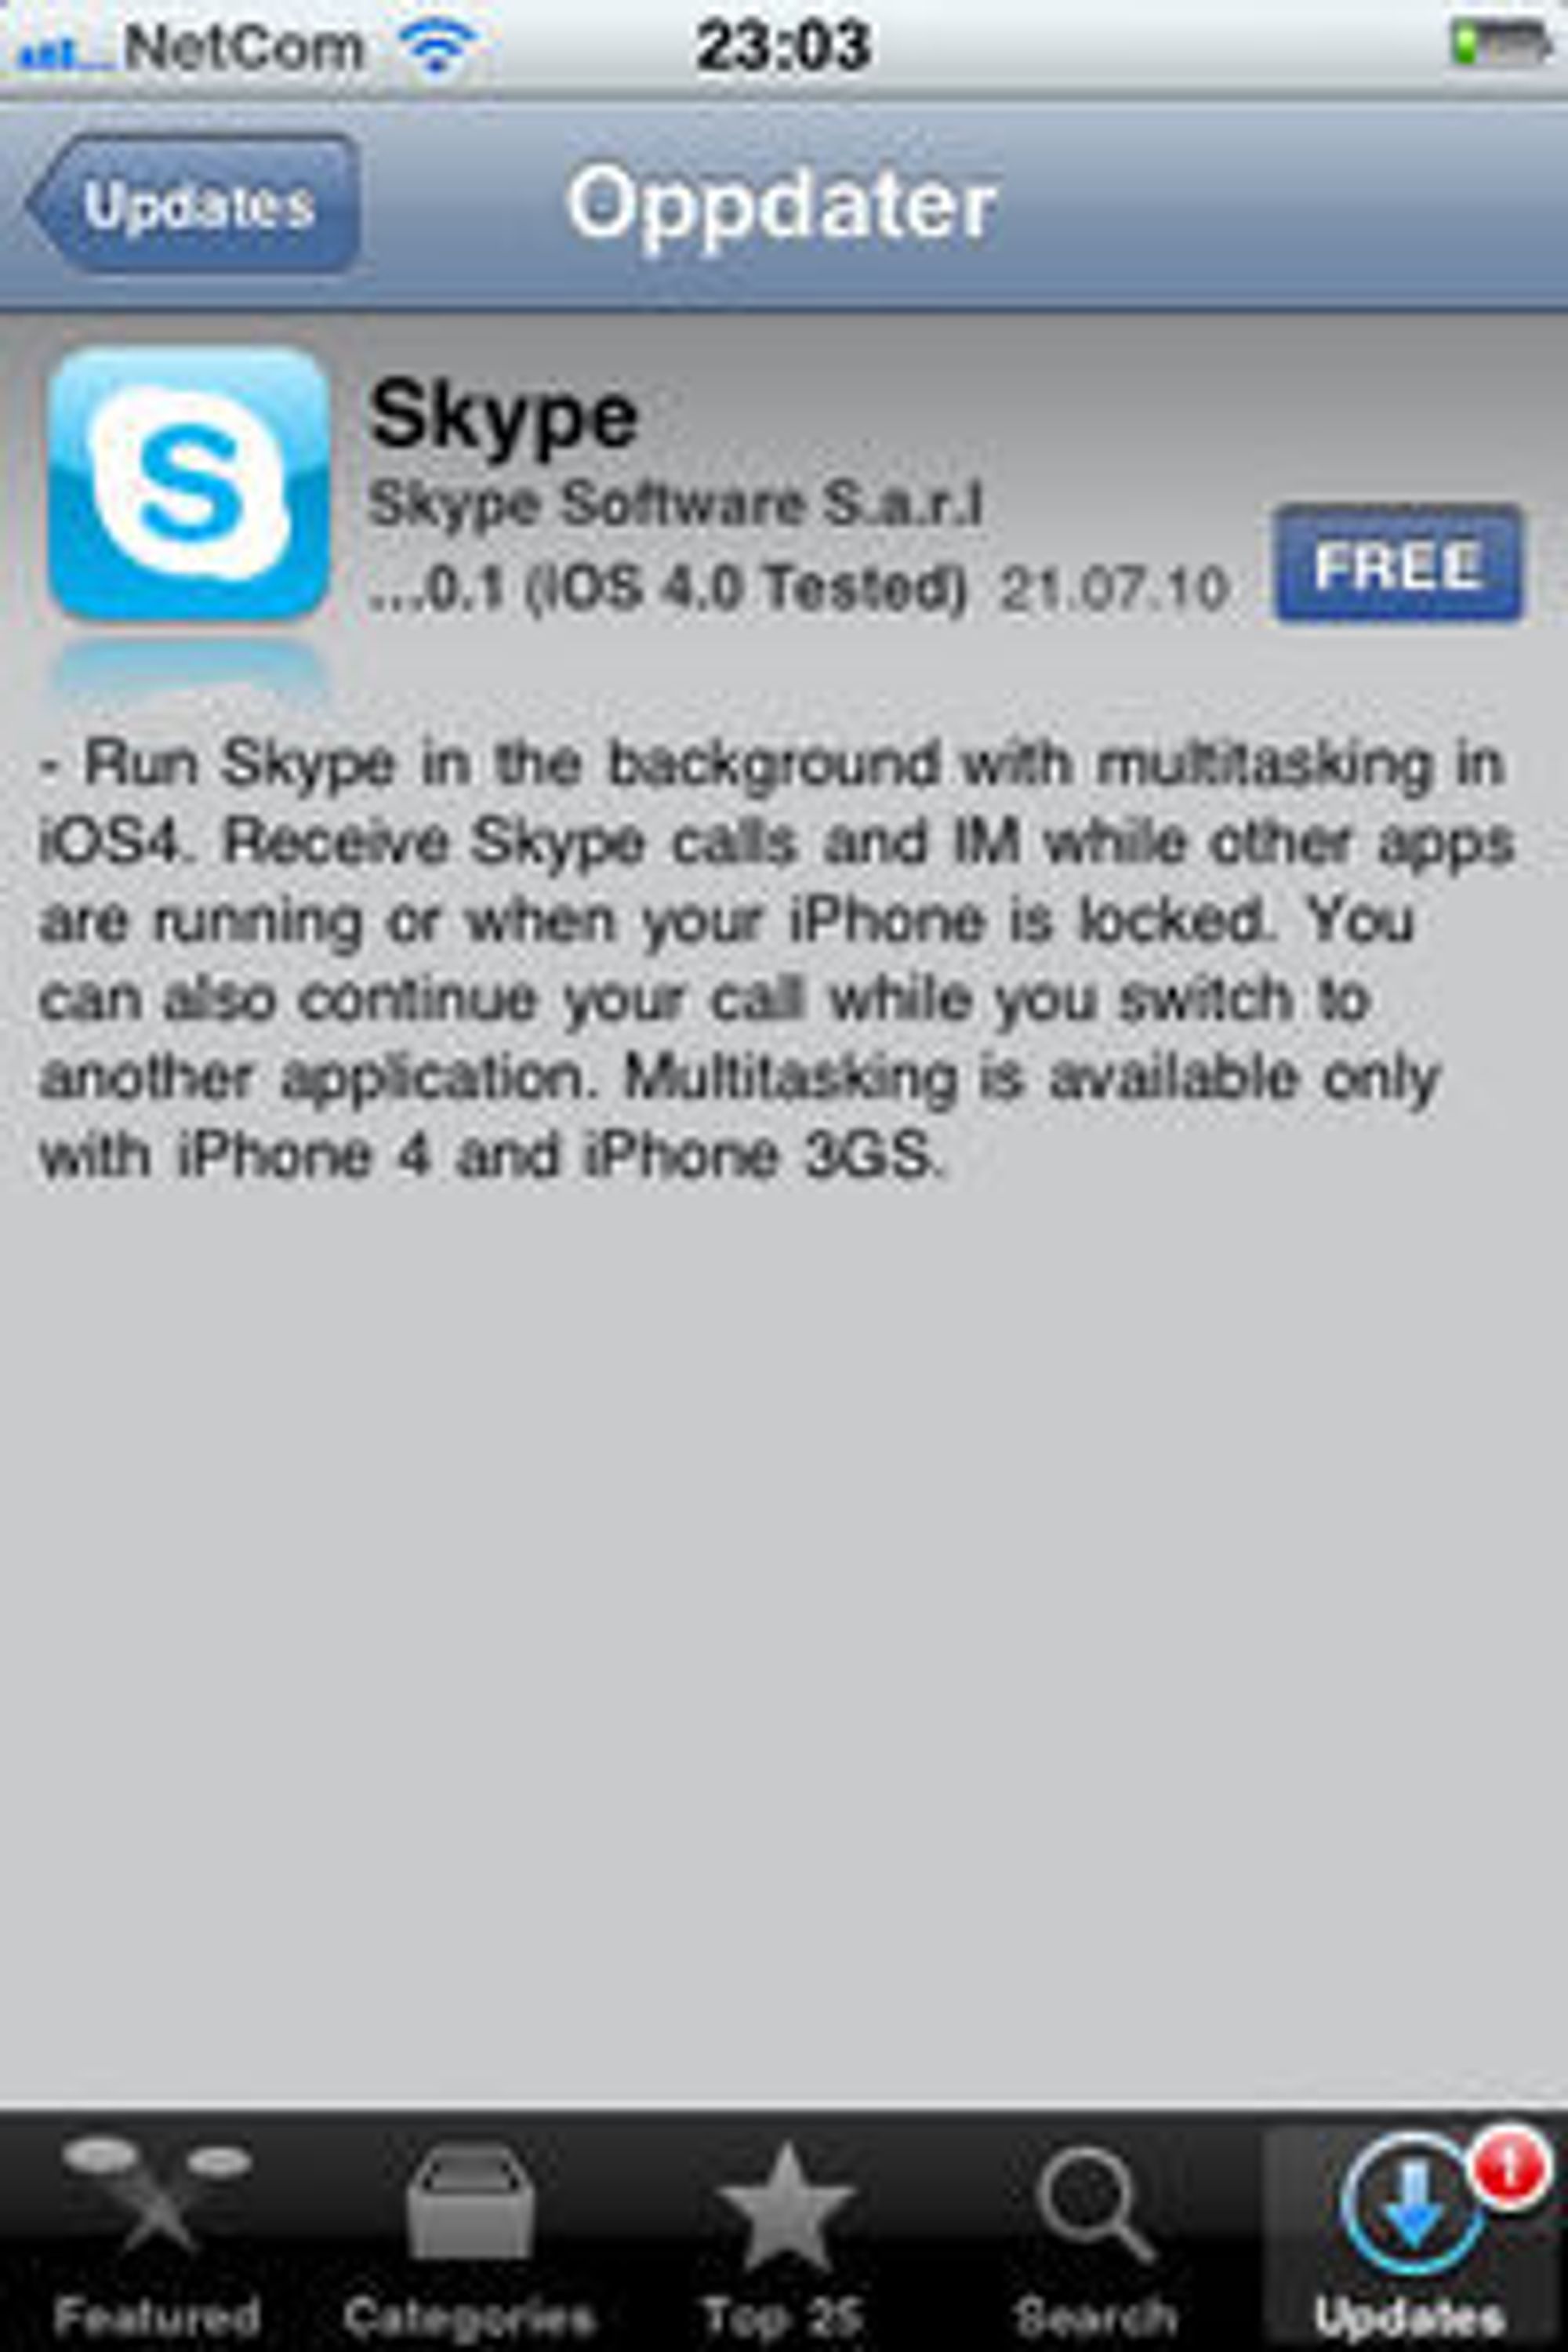 Skype 2.0.1 til iPhone støtter bare iPhone 4 og iPhone 3GS.